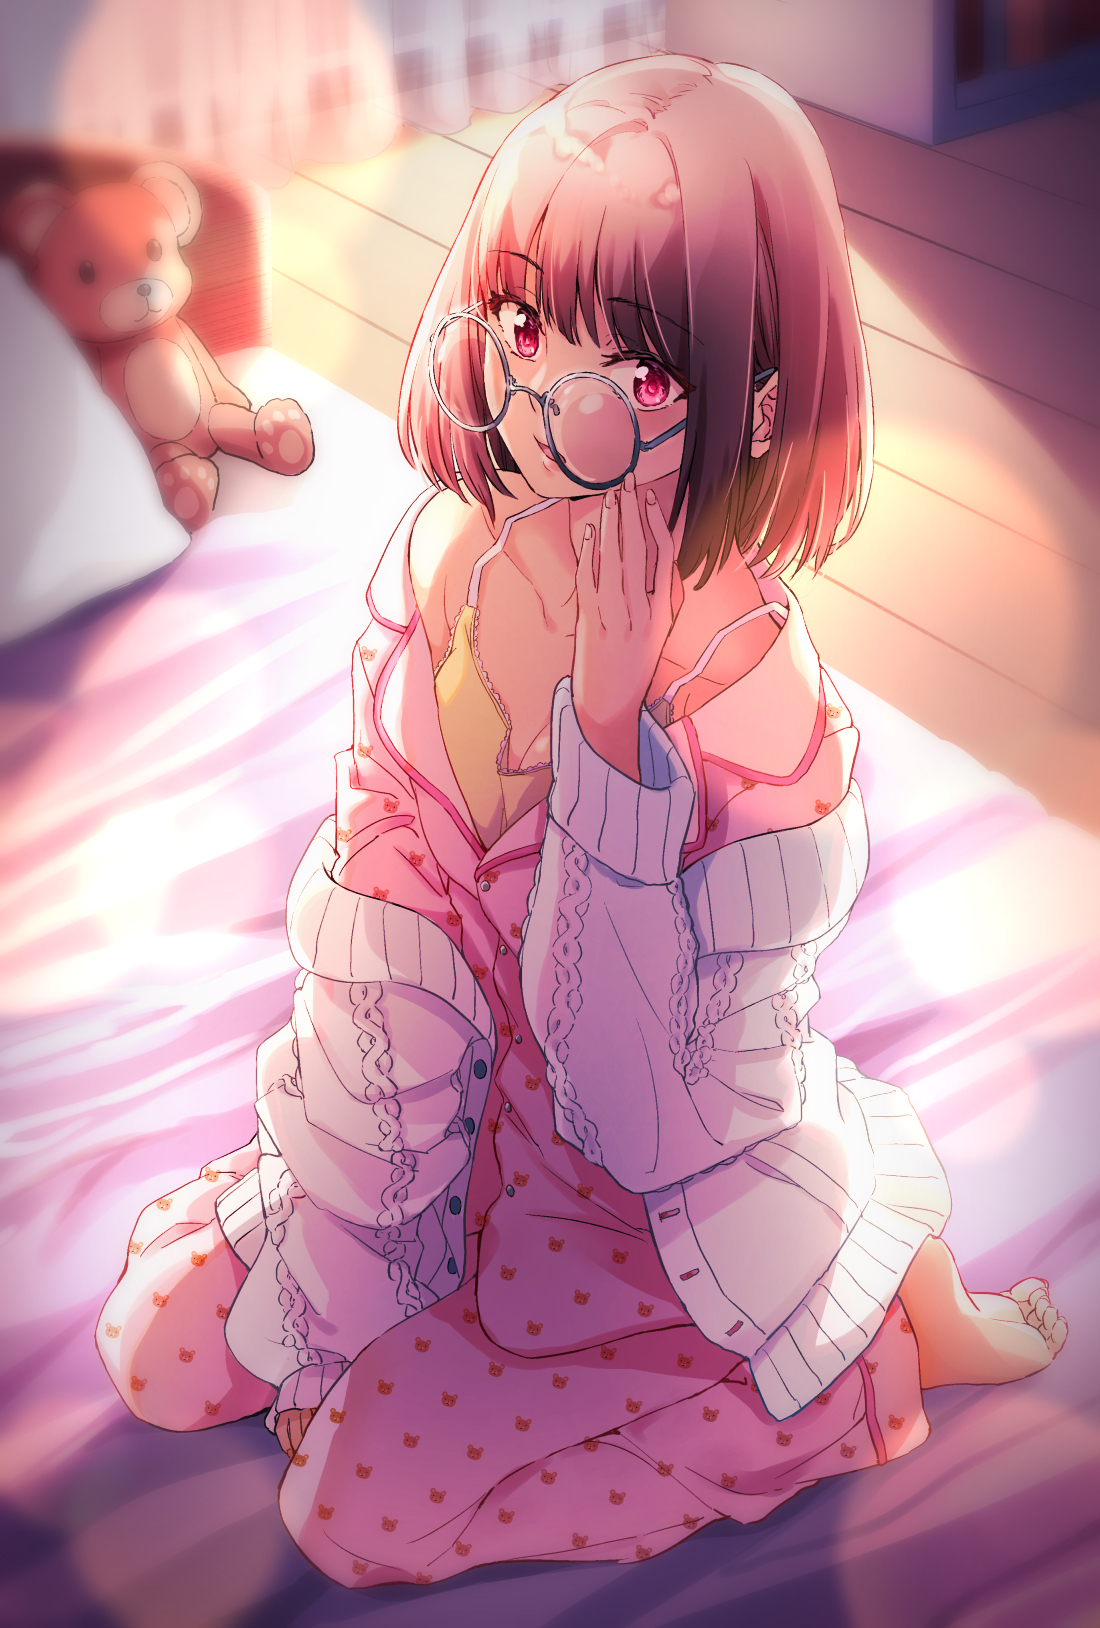 Anime 1100x1628 anime anime girls glasses red eyes kneeling teddy bears in bed brunette pyjamas feet